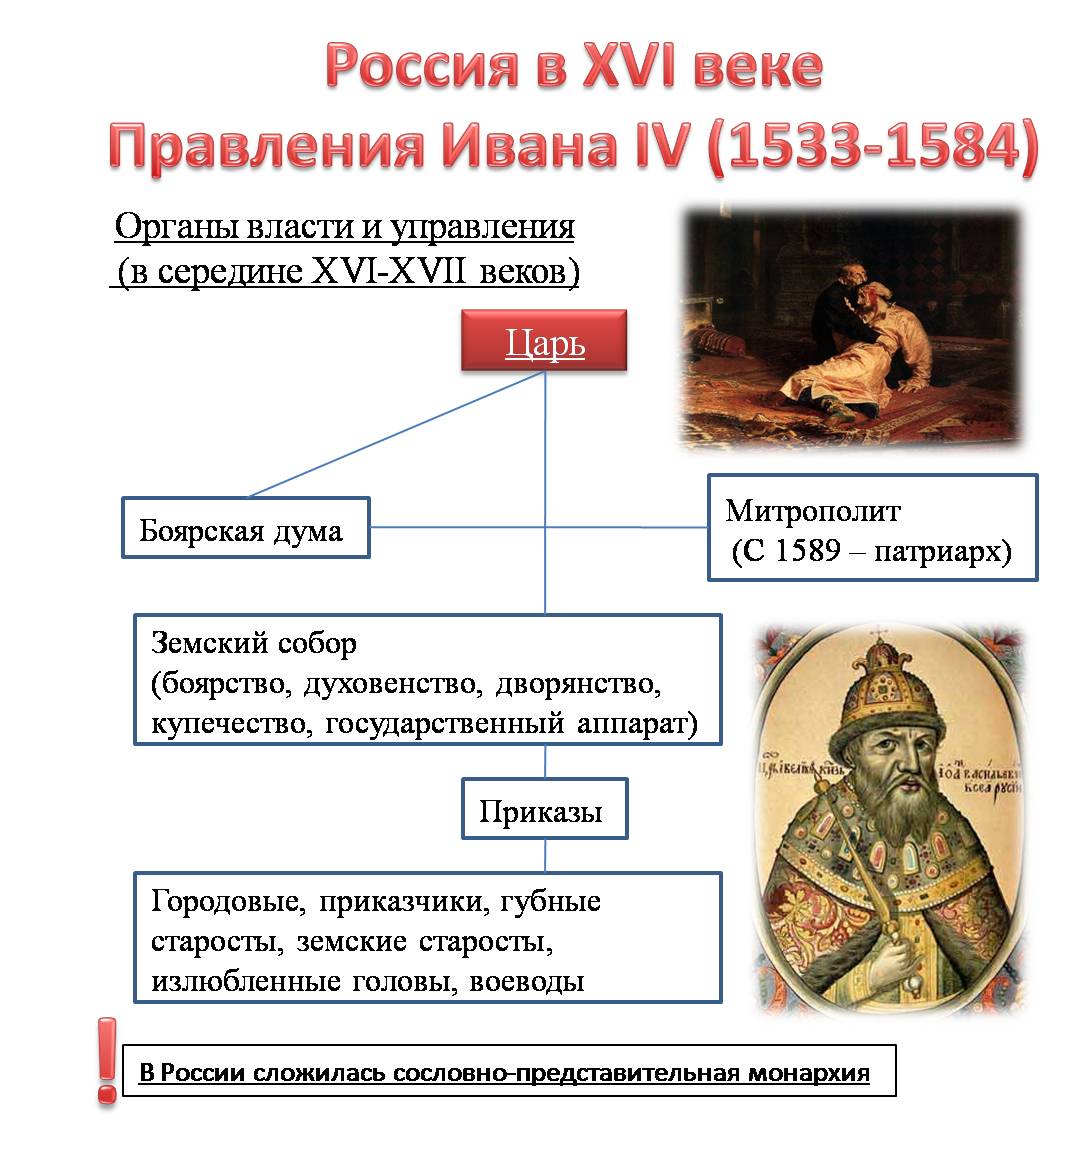 Схема по теме правление Ивана IV Грозного